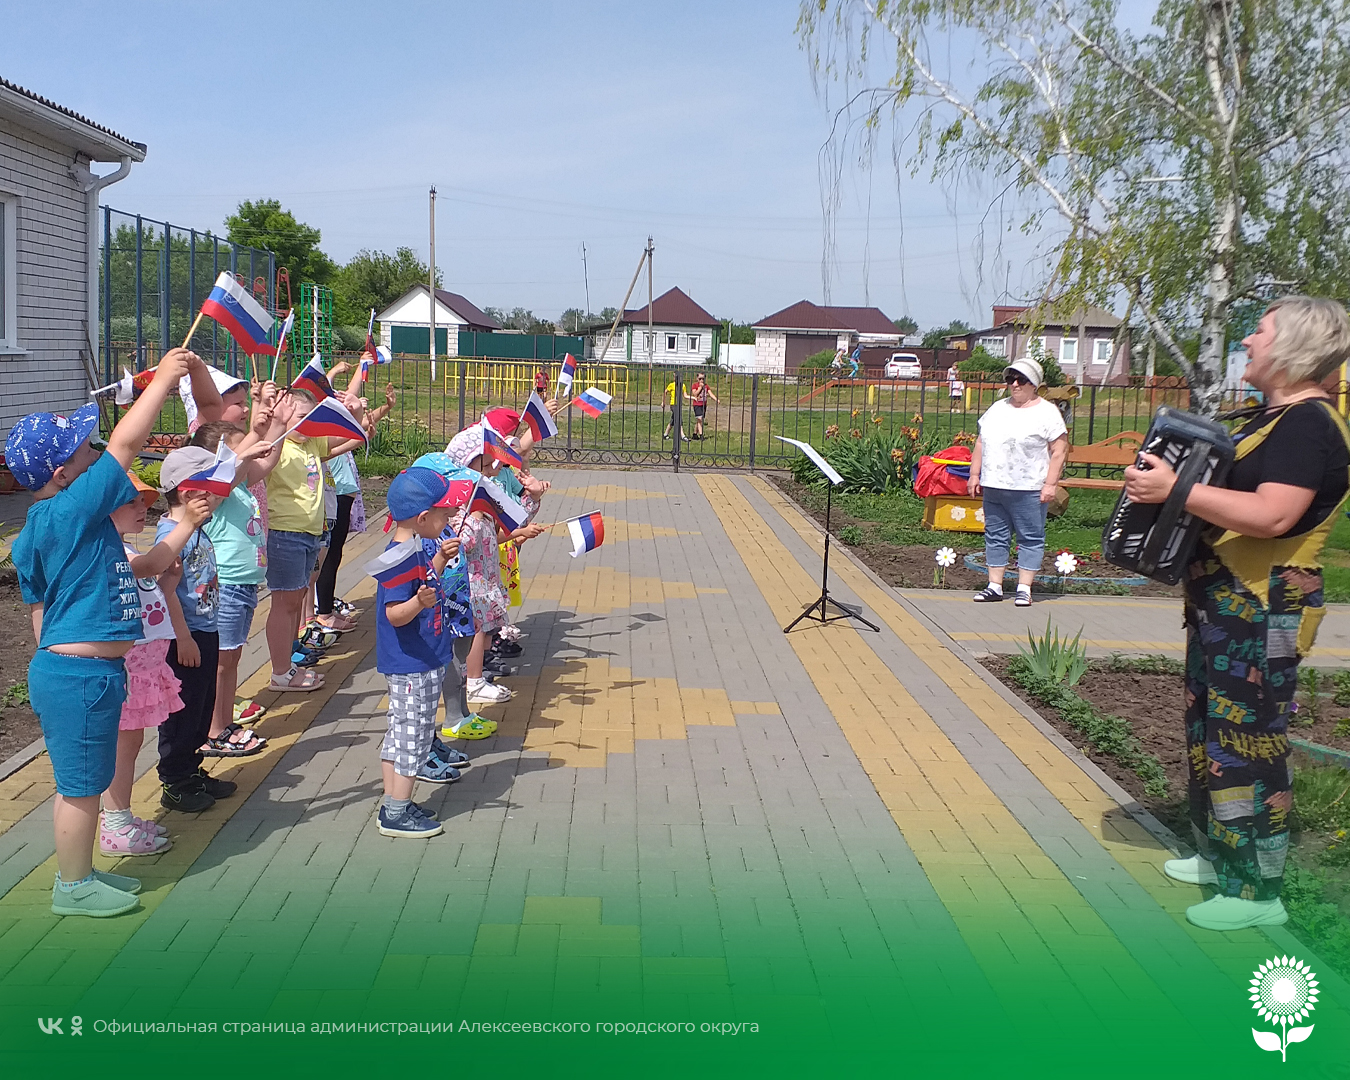 В детских садах Алексеевского городского округа состоялись торжественные мероприятия, посвященные Дню России.